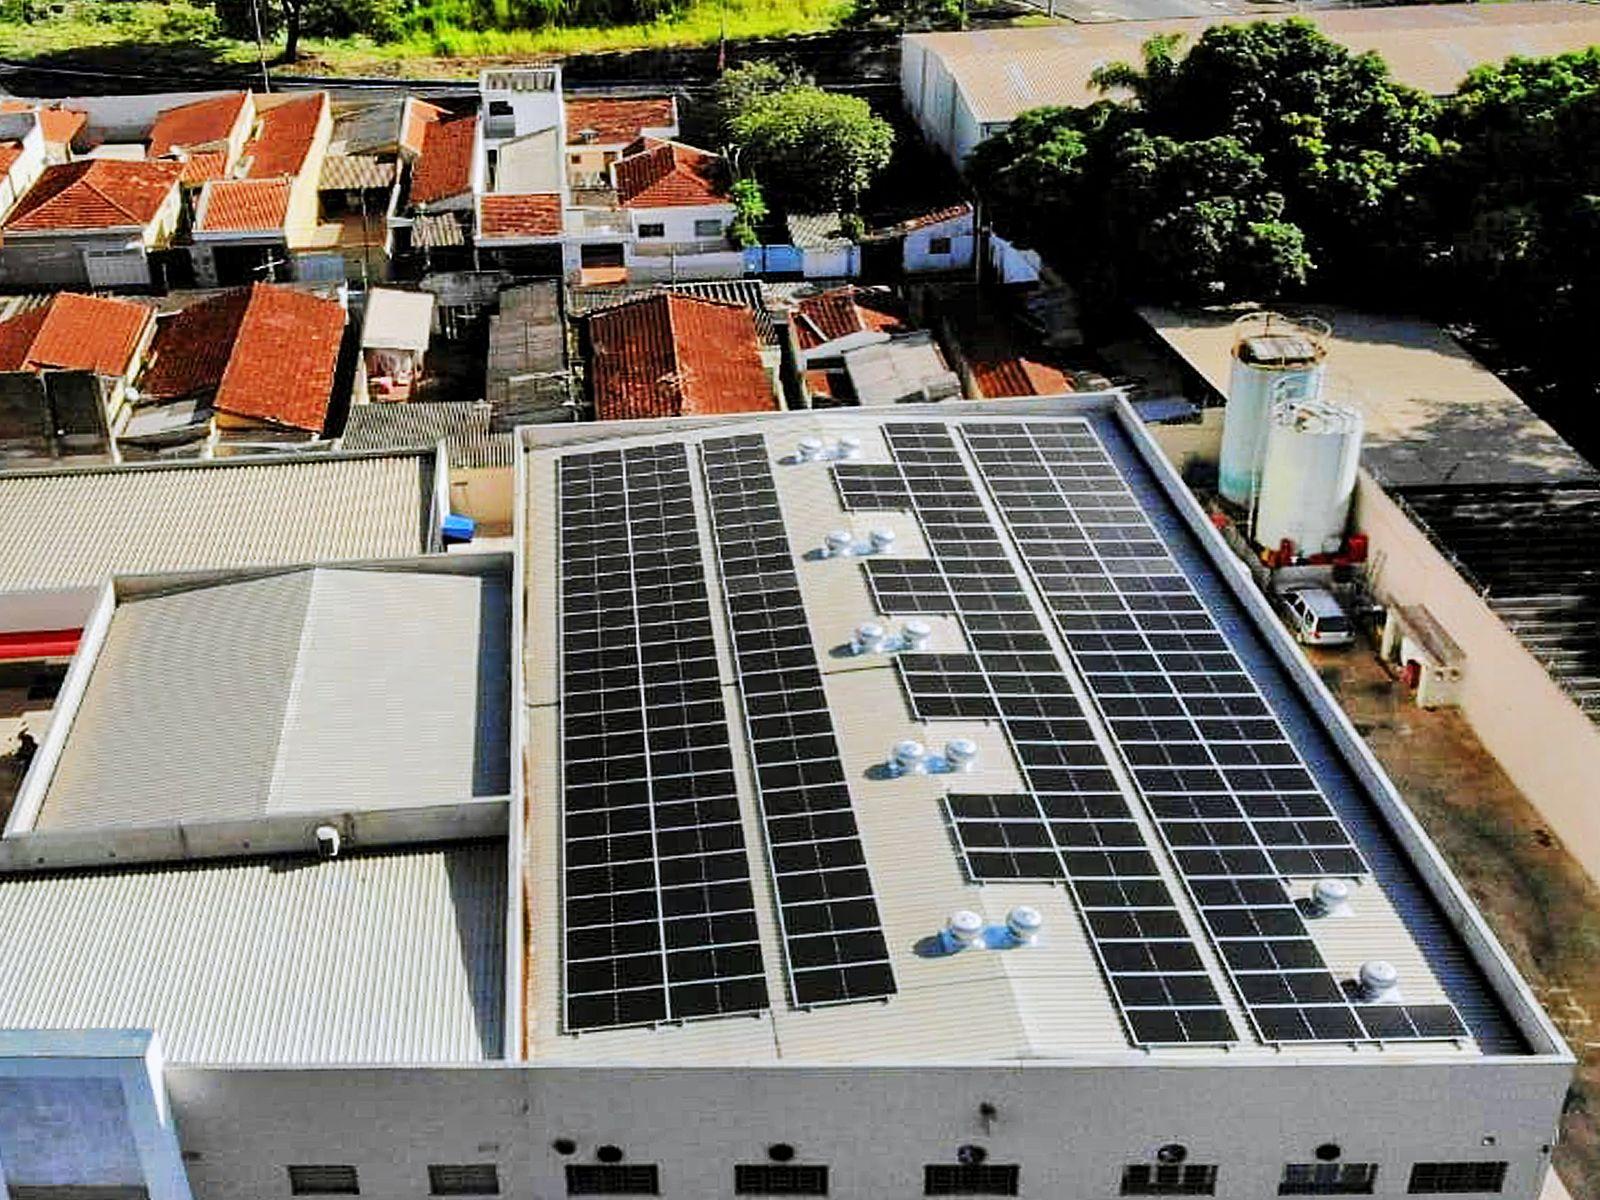 170 panneaux photovoltaïques installés sur le toit portent la taille totale du système à 90,1 kW à Ribeirão Preto-SP, au Brésil (2)